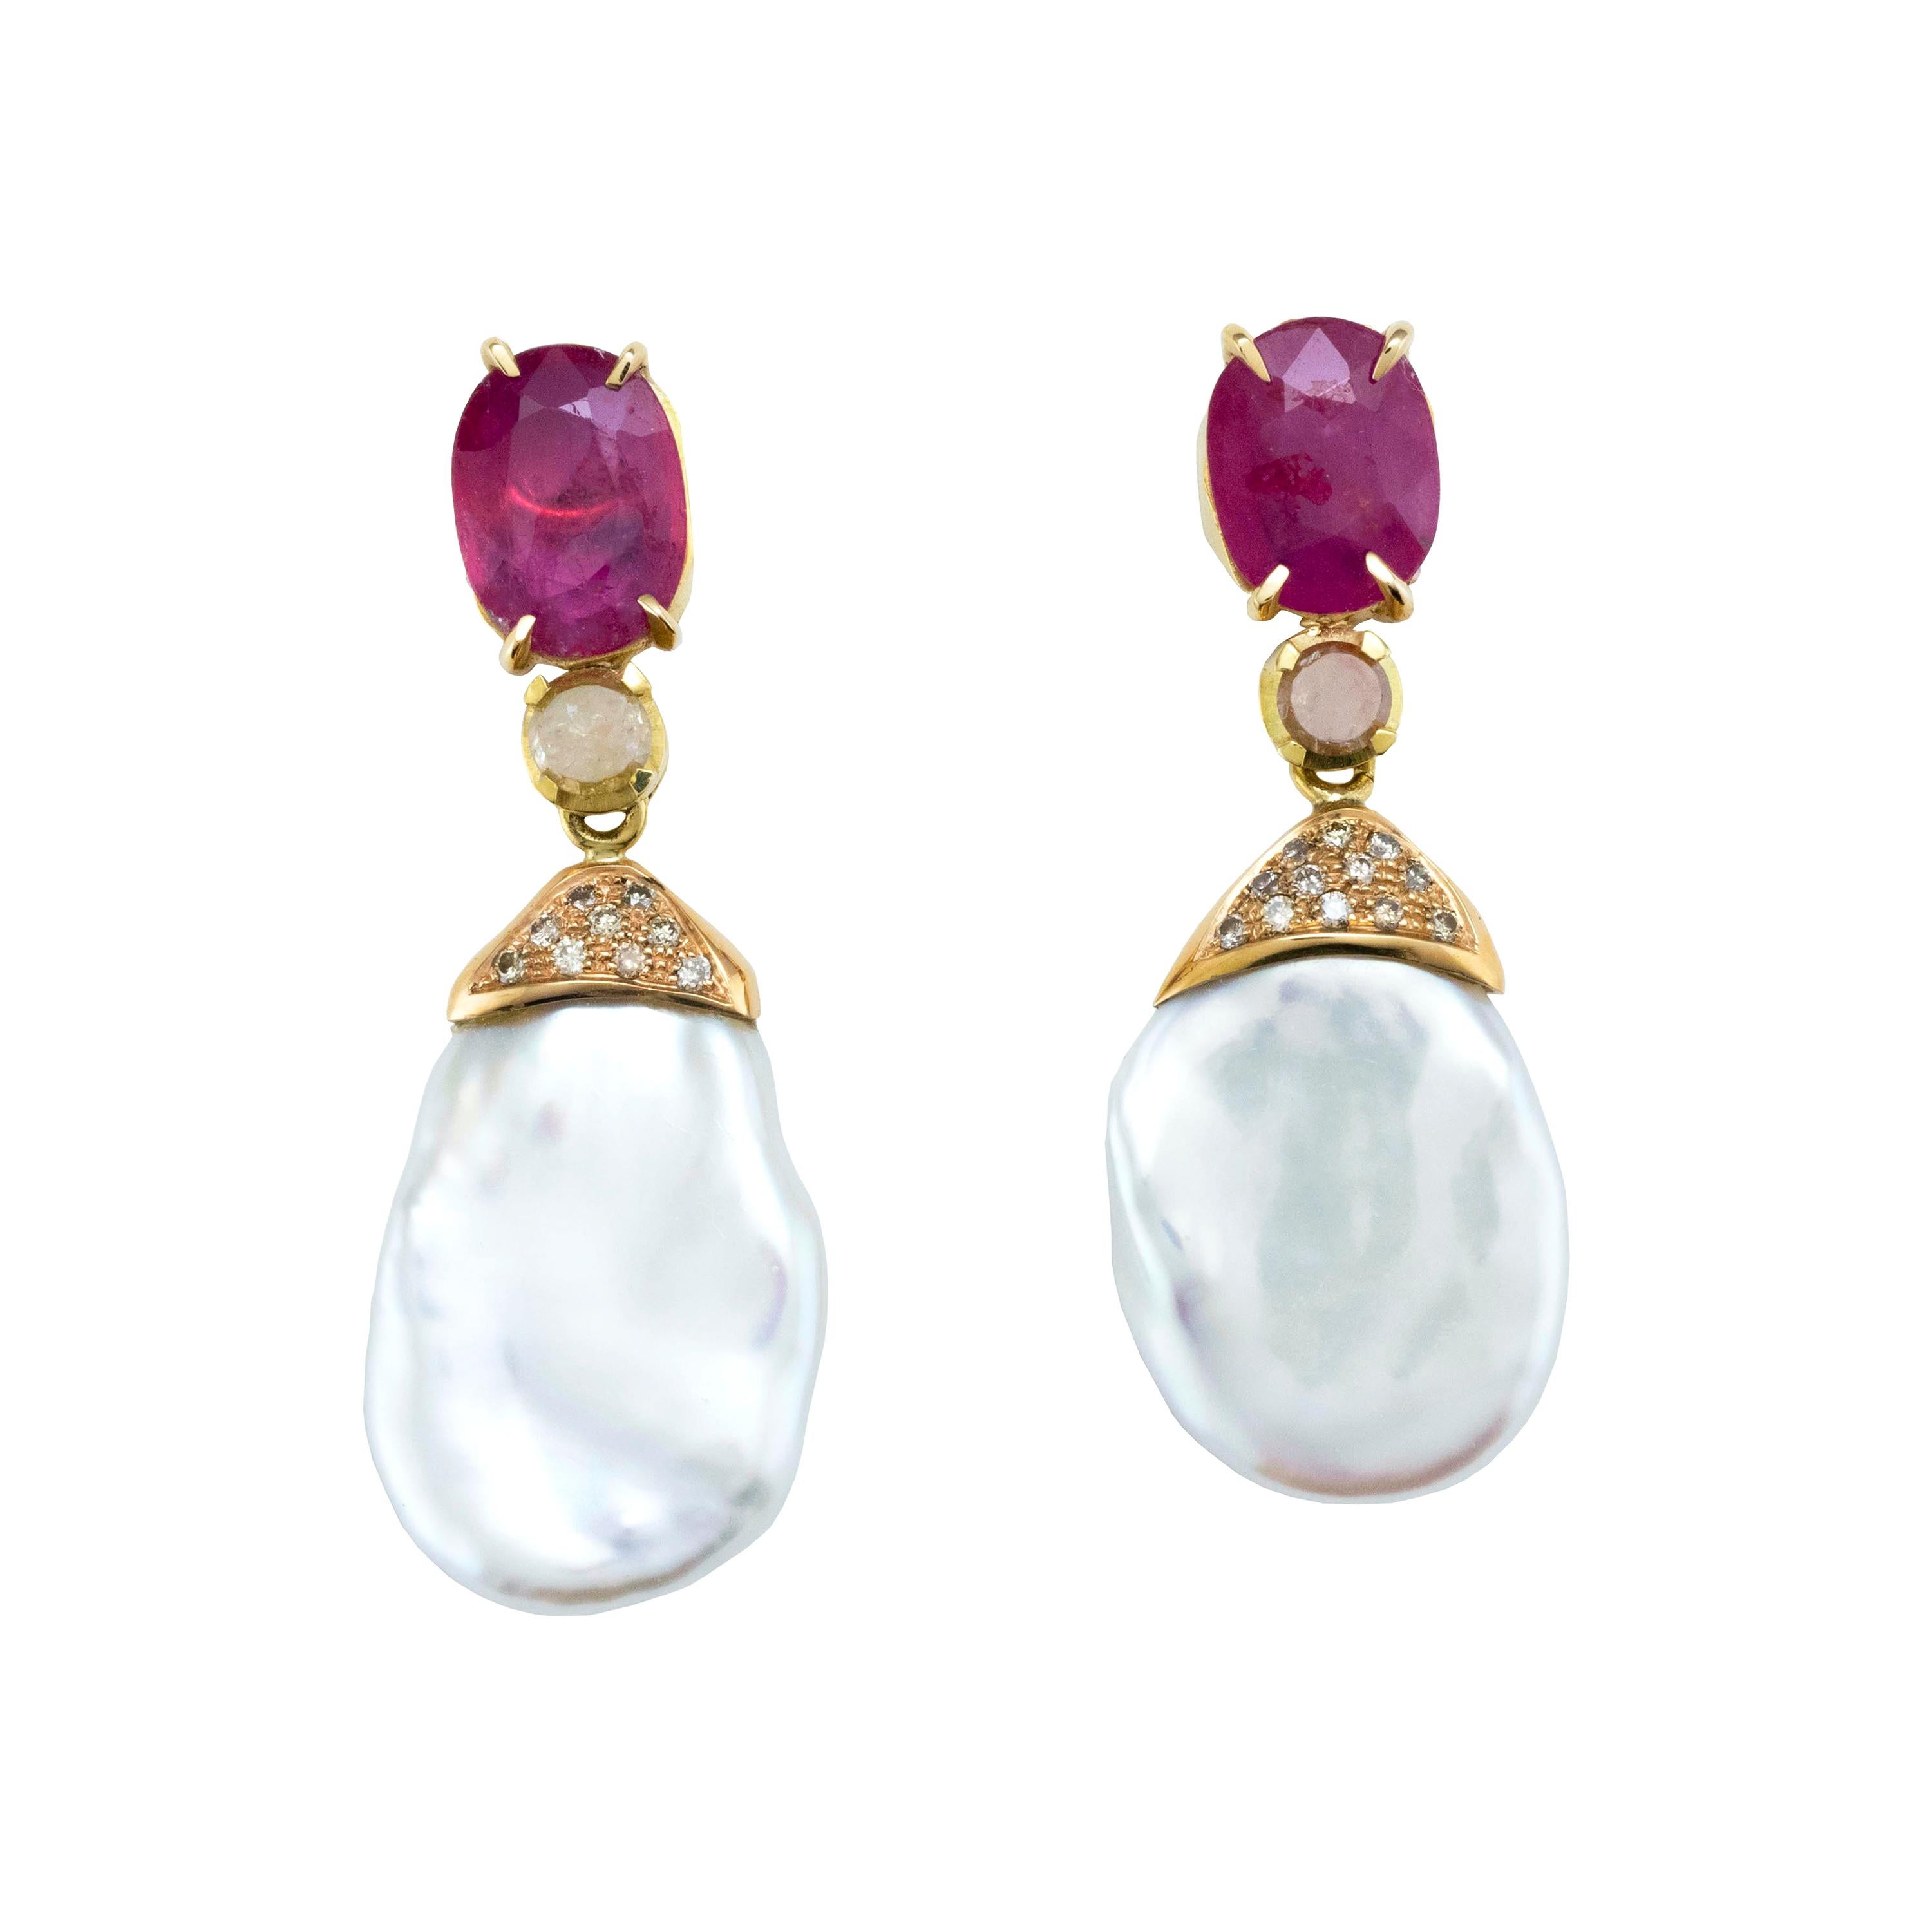 Boucles d'oreilles en goutte en or 18 carats, rubis et perles d'eau douce baroques